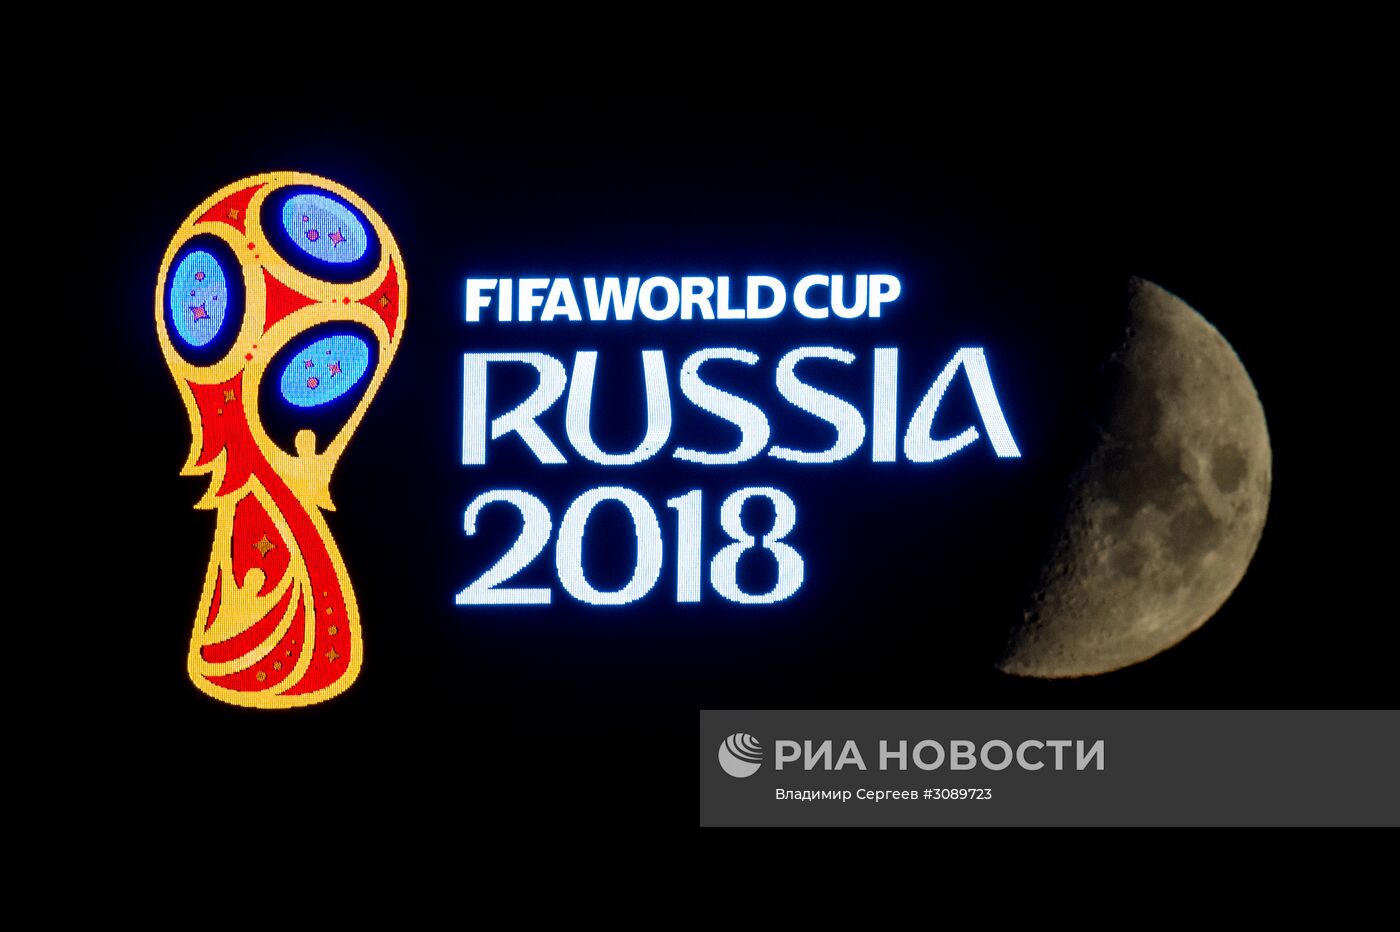 Эмблема чемпионата мира по футболу 2018